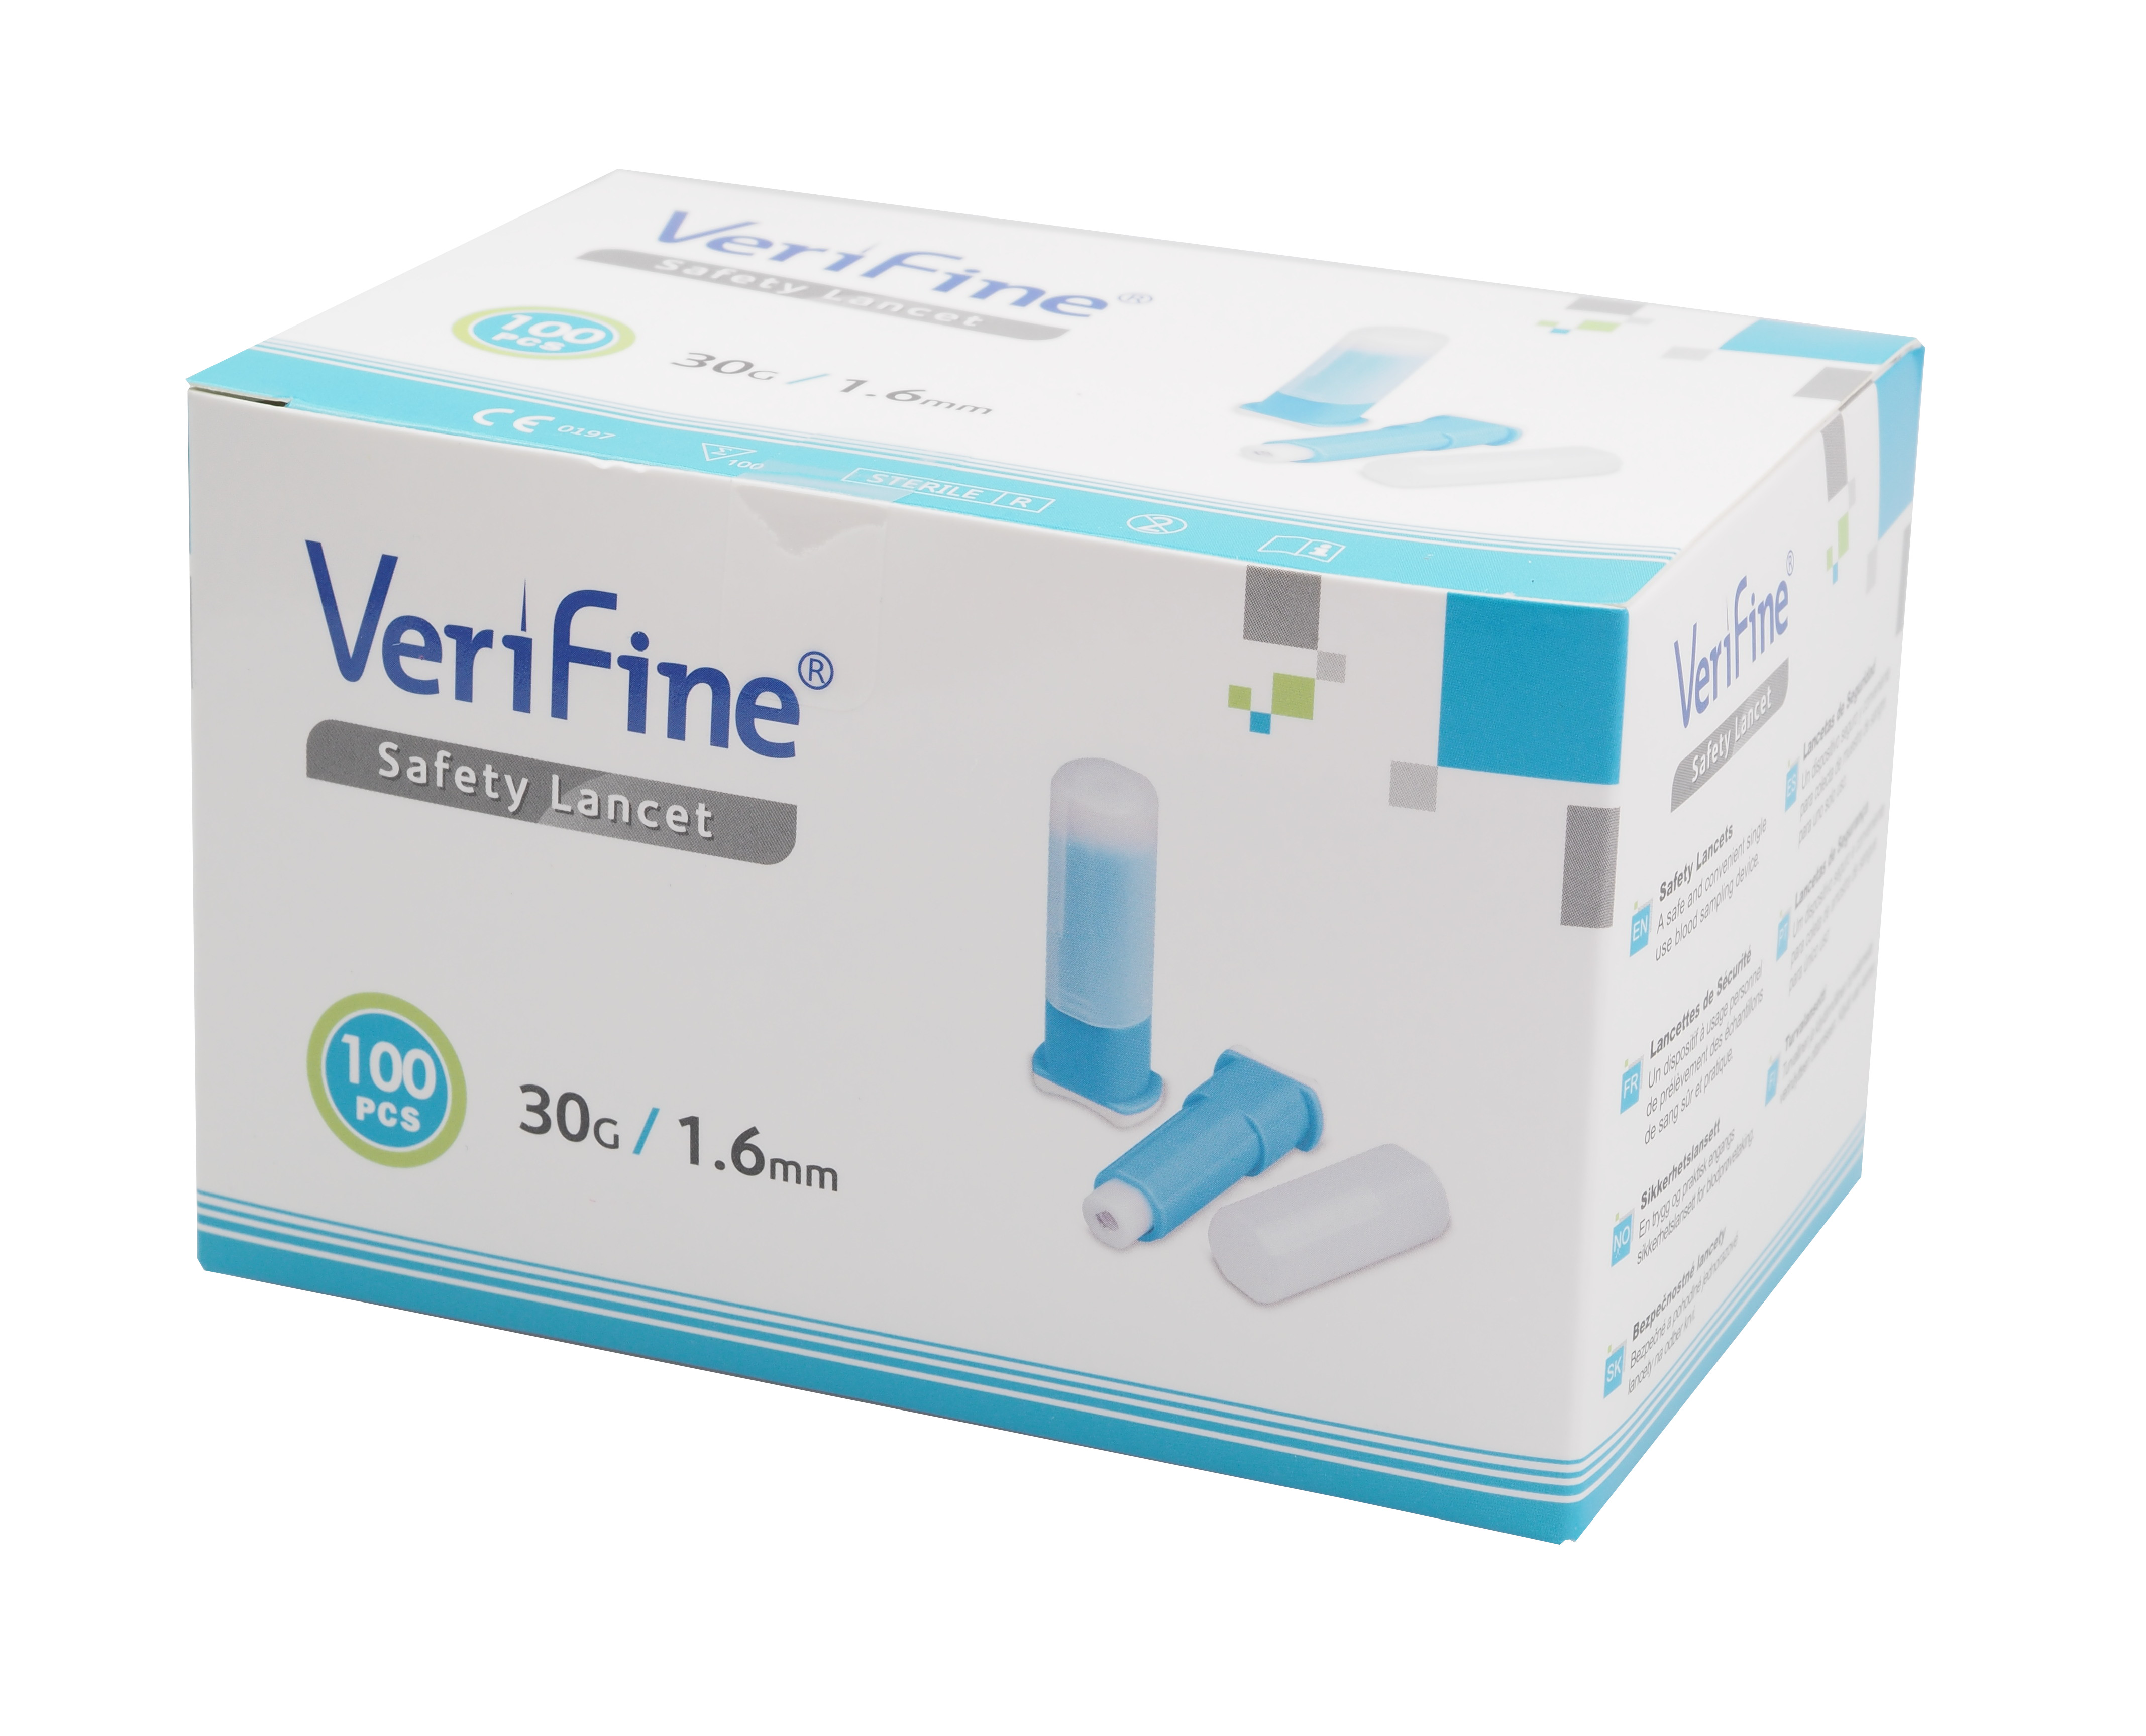 verifine-safety-lancet-30g-1-6mm.jpg